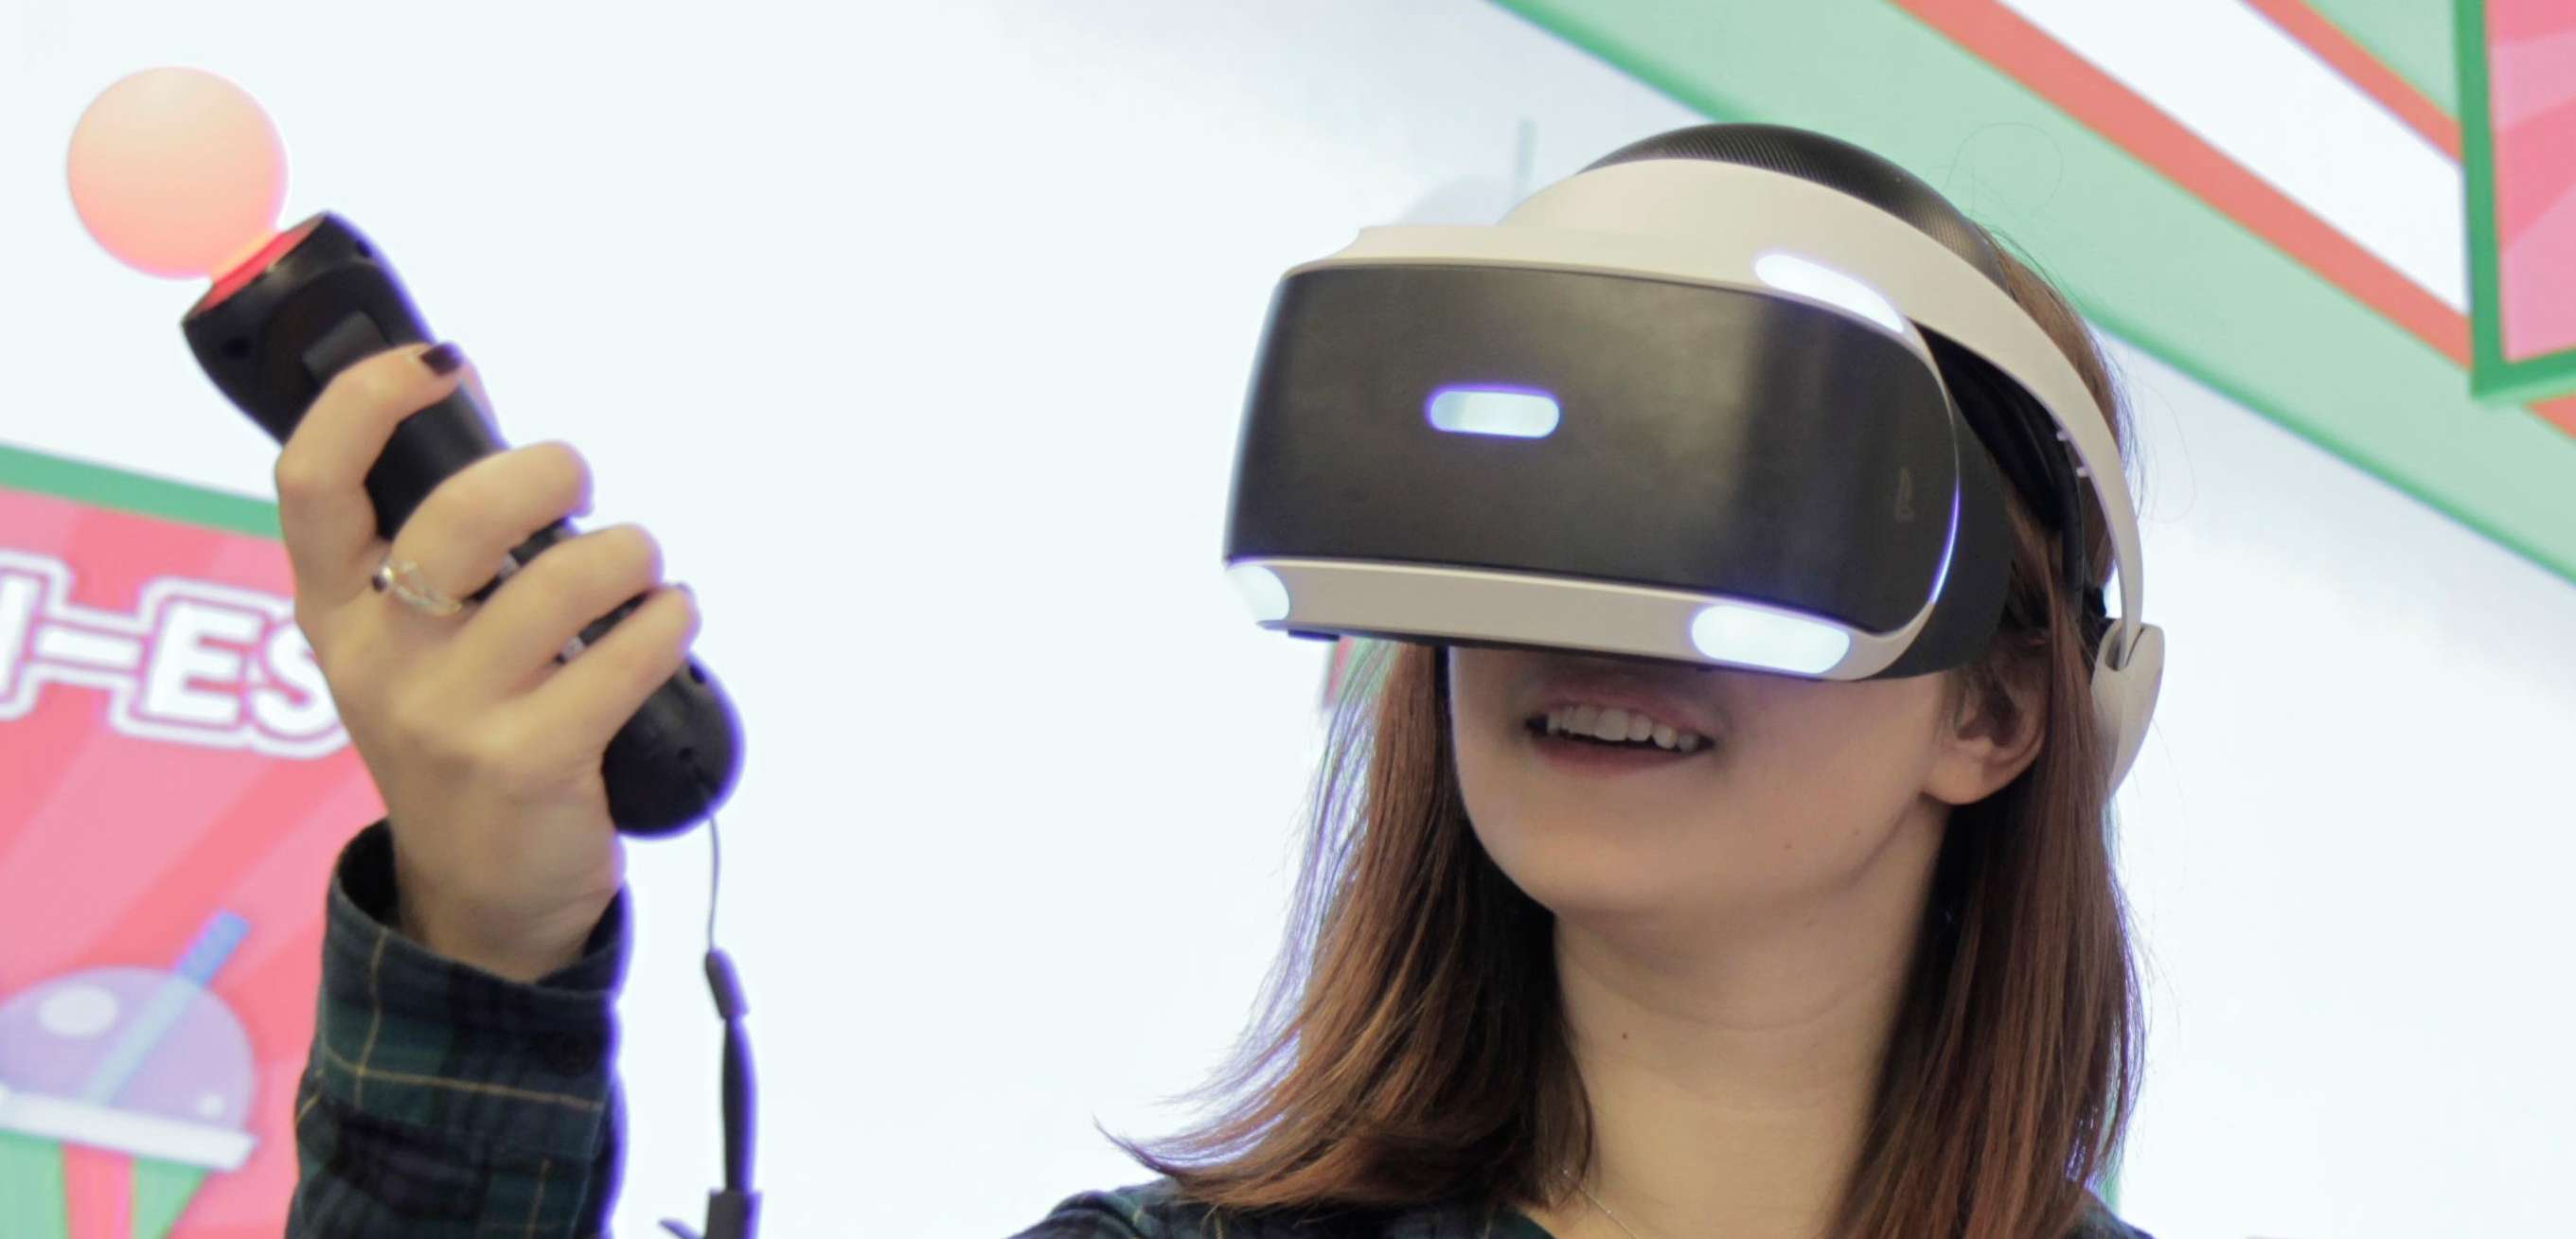 PlayStation VR. Prezentacja świeżych gier w reklamie Sony